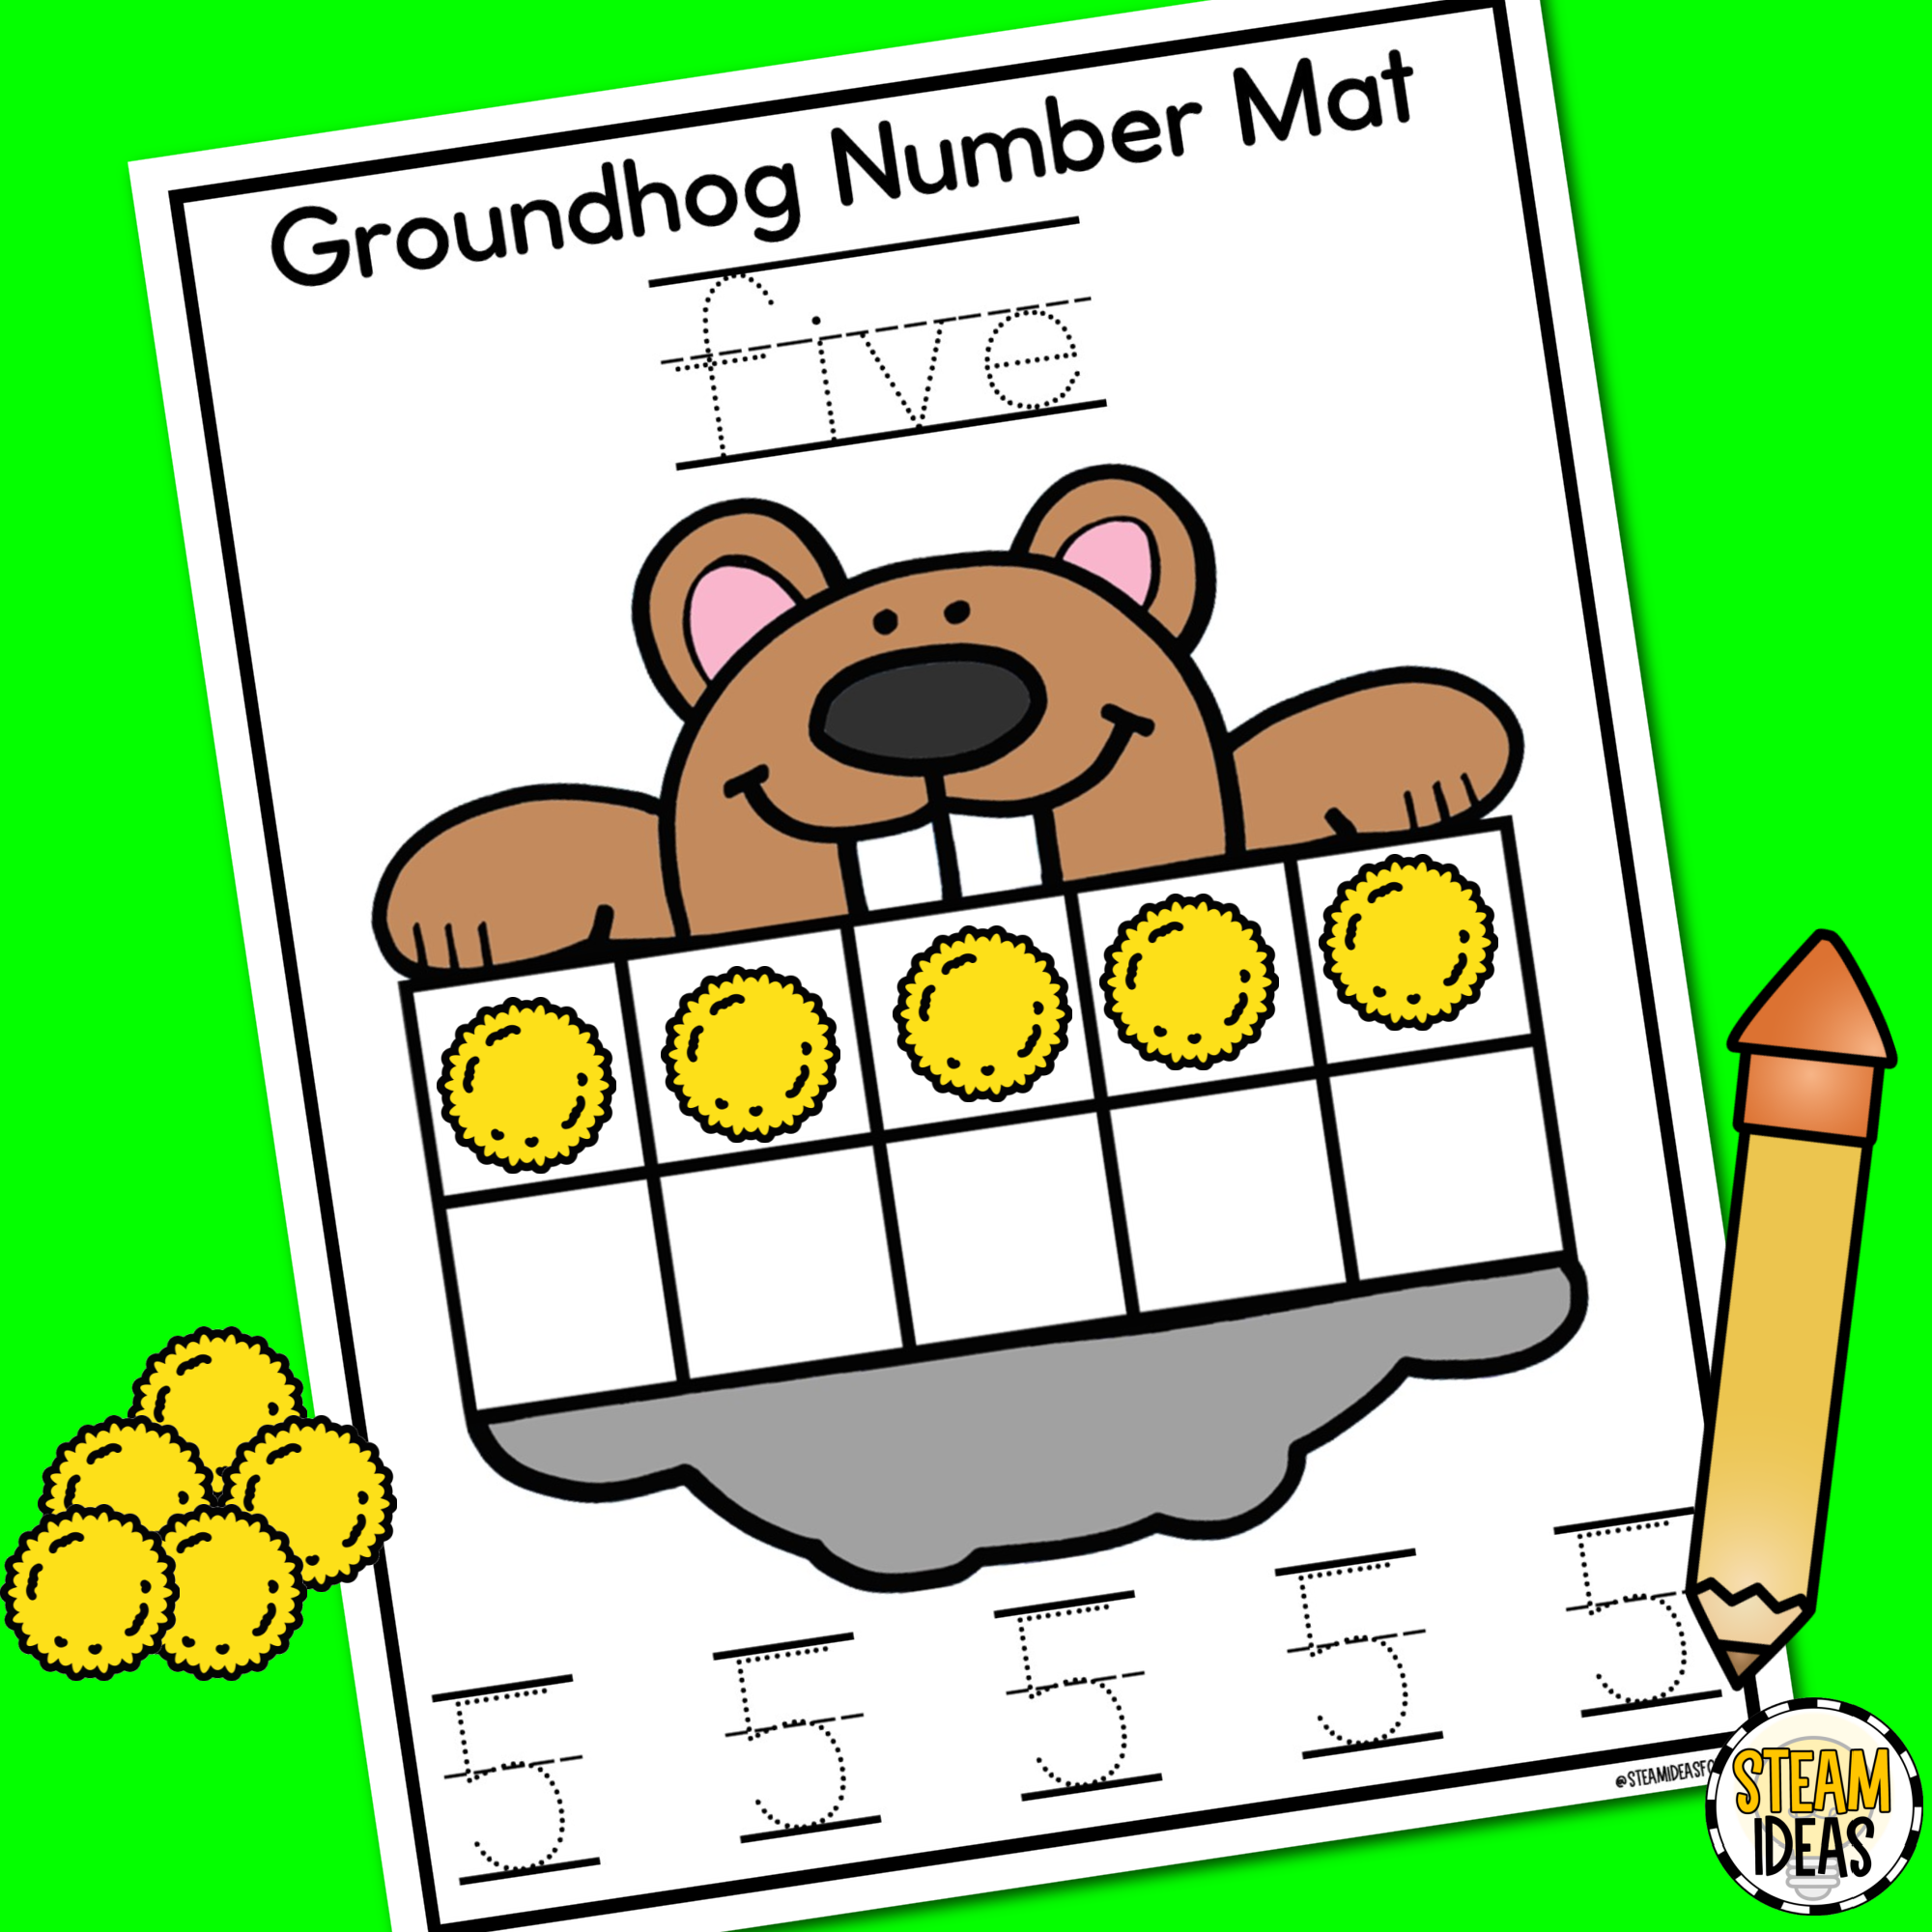 Groundhog Number Mats